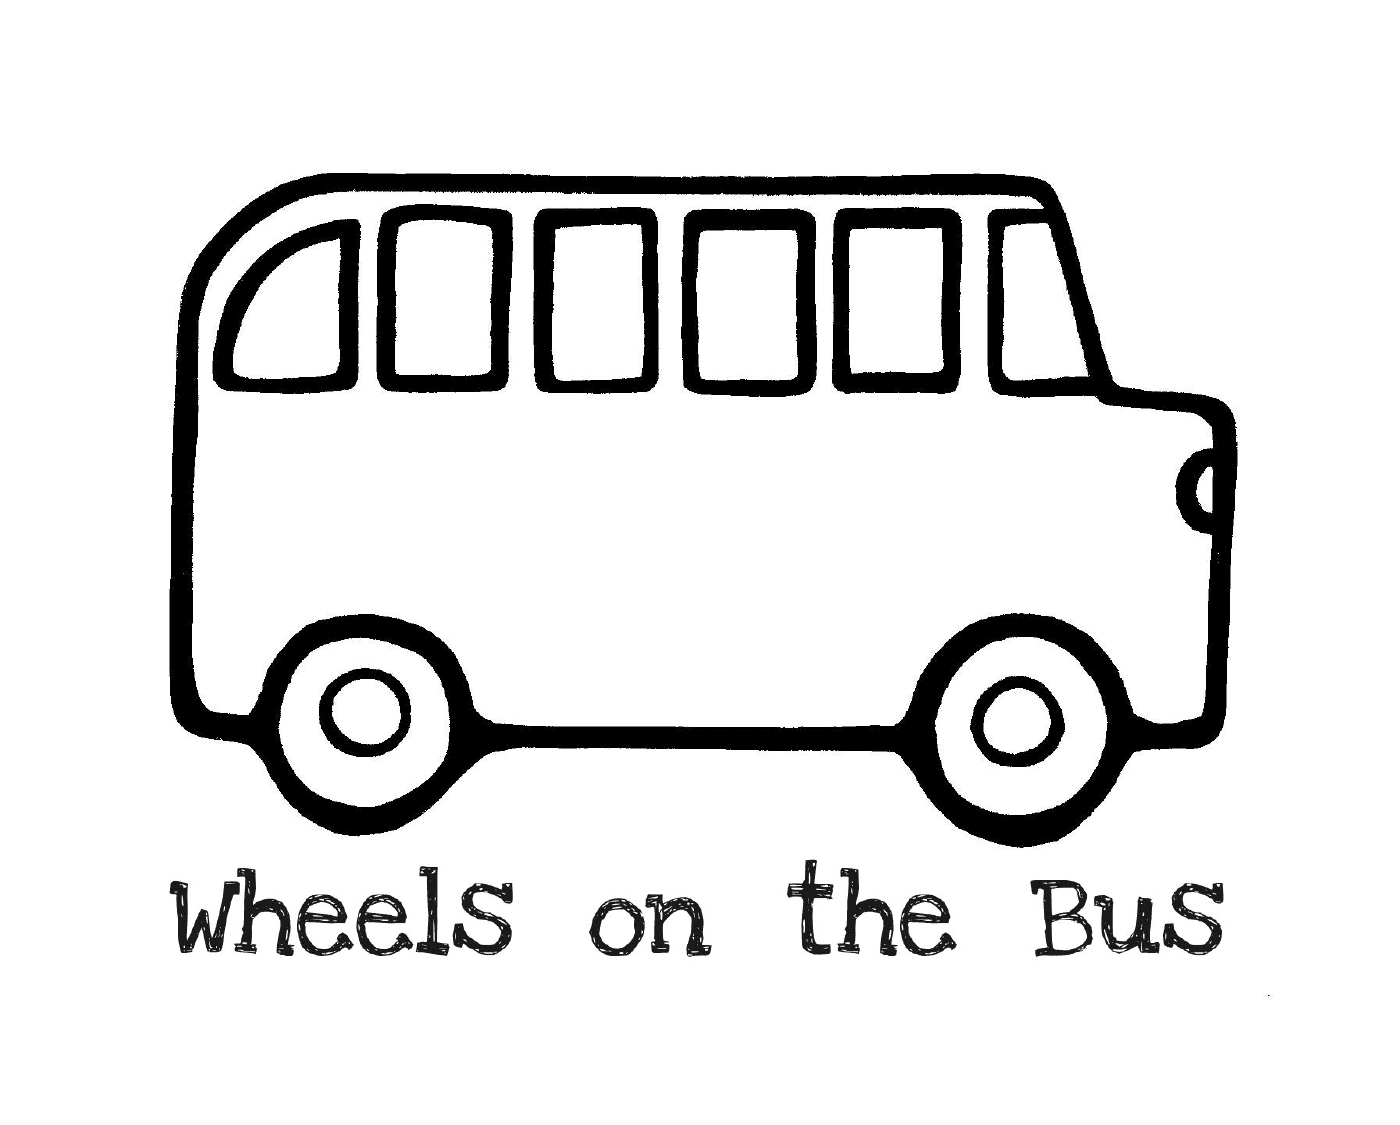  Un autobús con las palabras Las ruedas del autobús 